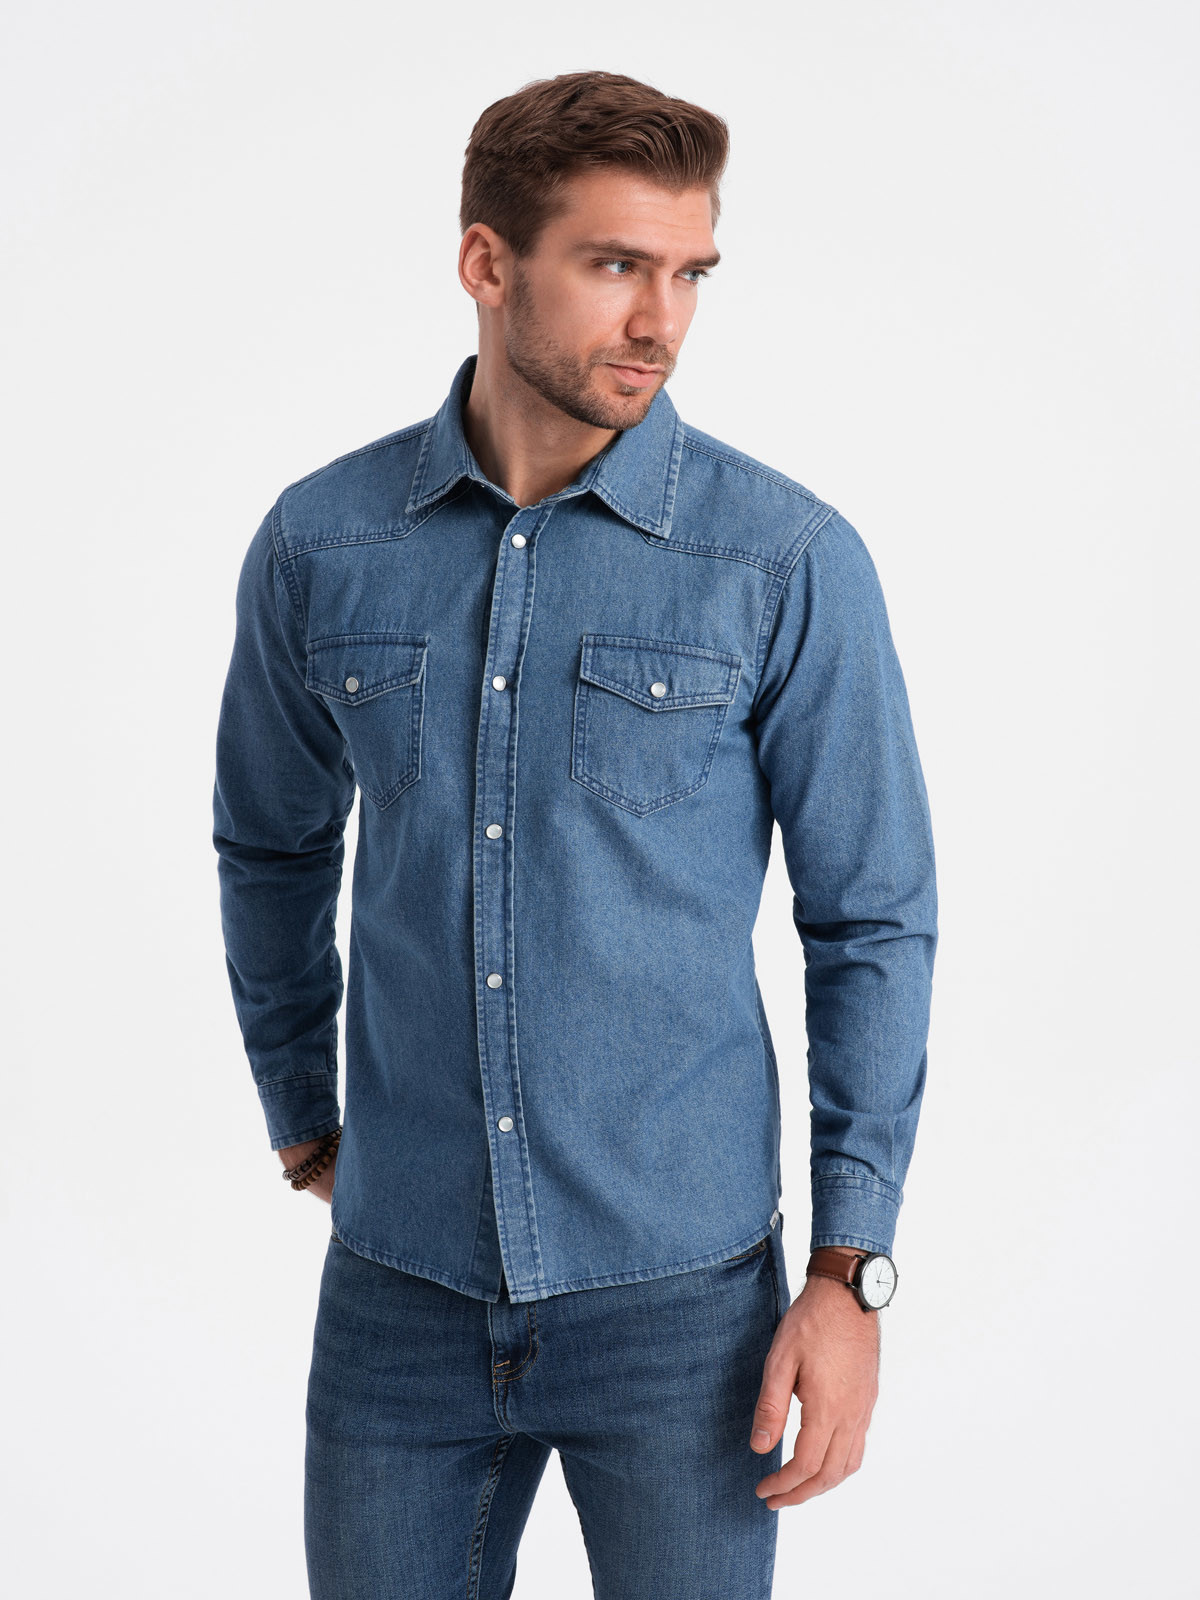 Men's denim snap shirt with pockets - blue V2 OM-SHDS V2 OM-SHDS - 0115